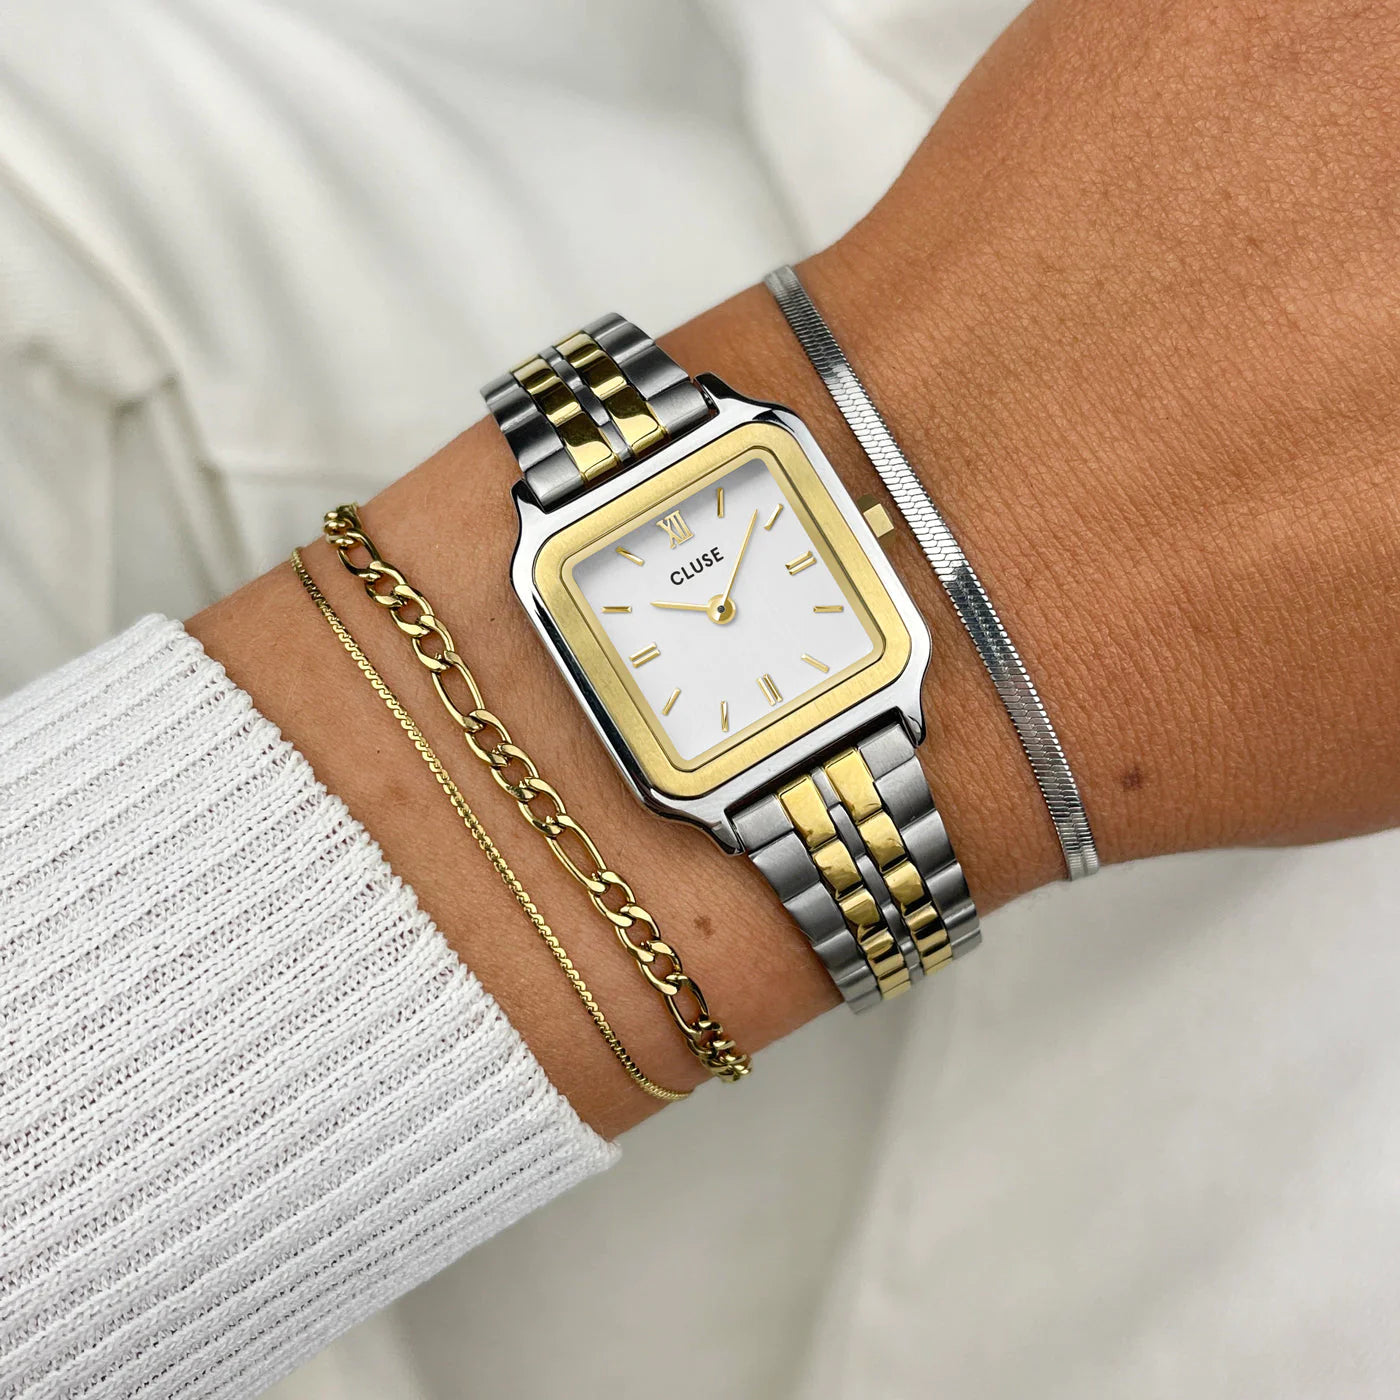 Frau trägt die  Cluse Stahl-Uhr "Gracieuse Petite" in Stahl-Gold-Optik (bicolor) mit weißem Zifferblatt und kombiniert diese mit drei Armbändern